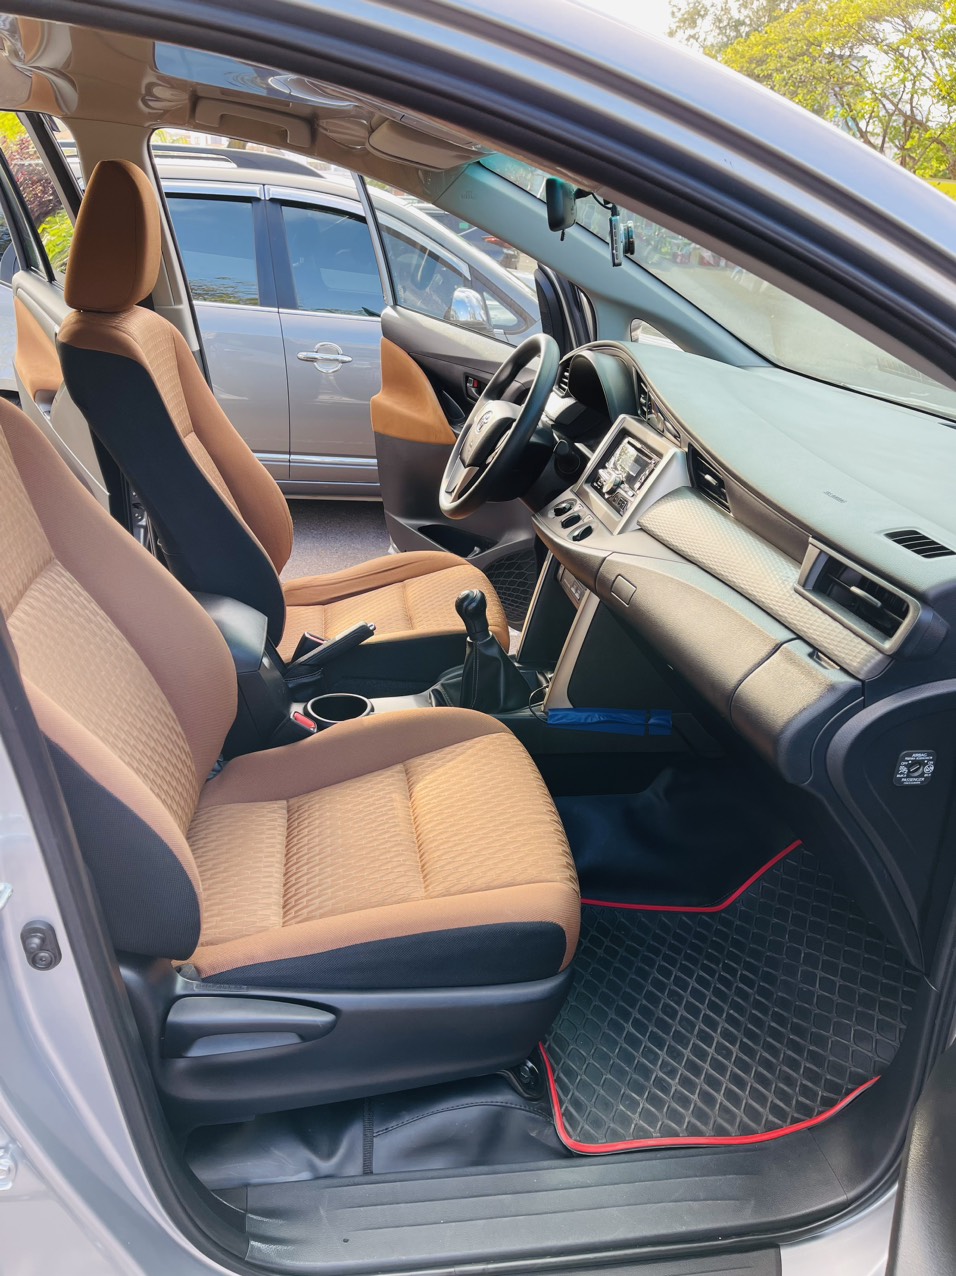 UUsed Car Dealer Trimap đang bán; Toyota Innova E 2.0 sx 2019, đăng ký 2020 một chủ mua mới đầu. -5